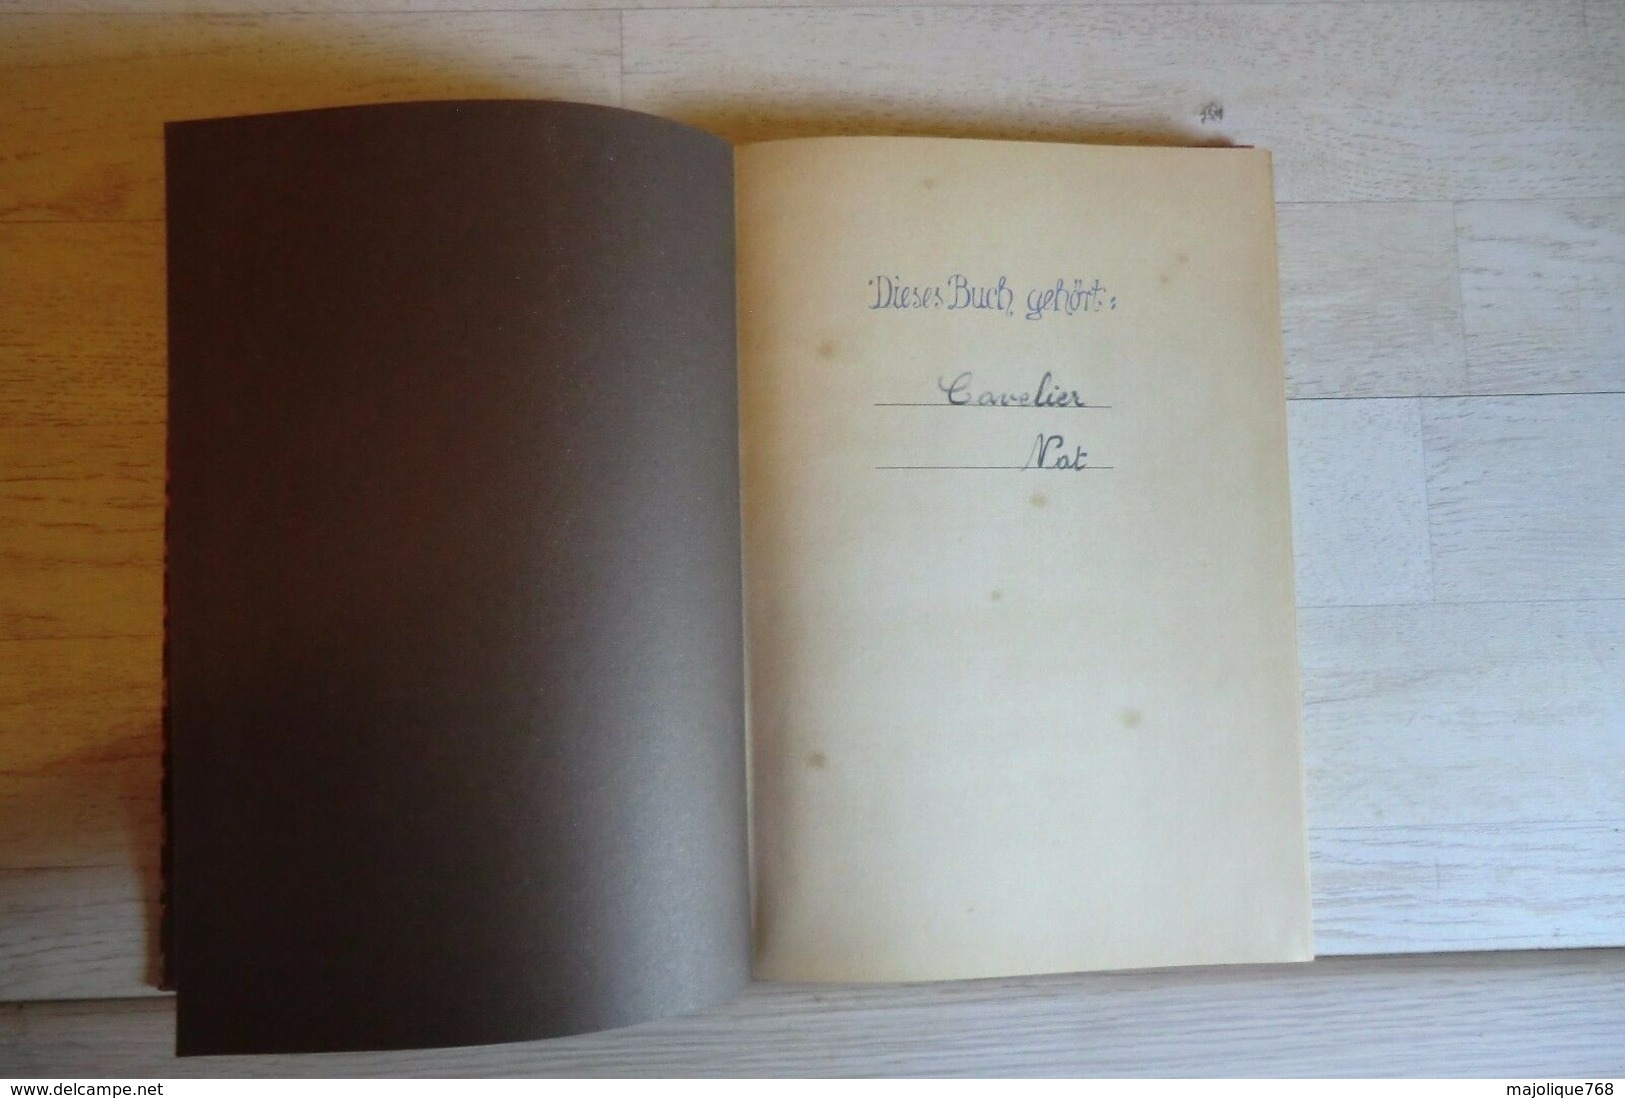 Das Kochbuch Aus Dem Schwarzwald- Verlegt Von - Wolfgang Hölder-1978 Le Livre De Cuisine De Déplacé Par La Forêt - Noire - Manger & Boire